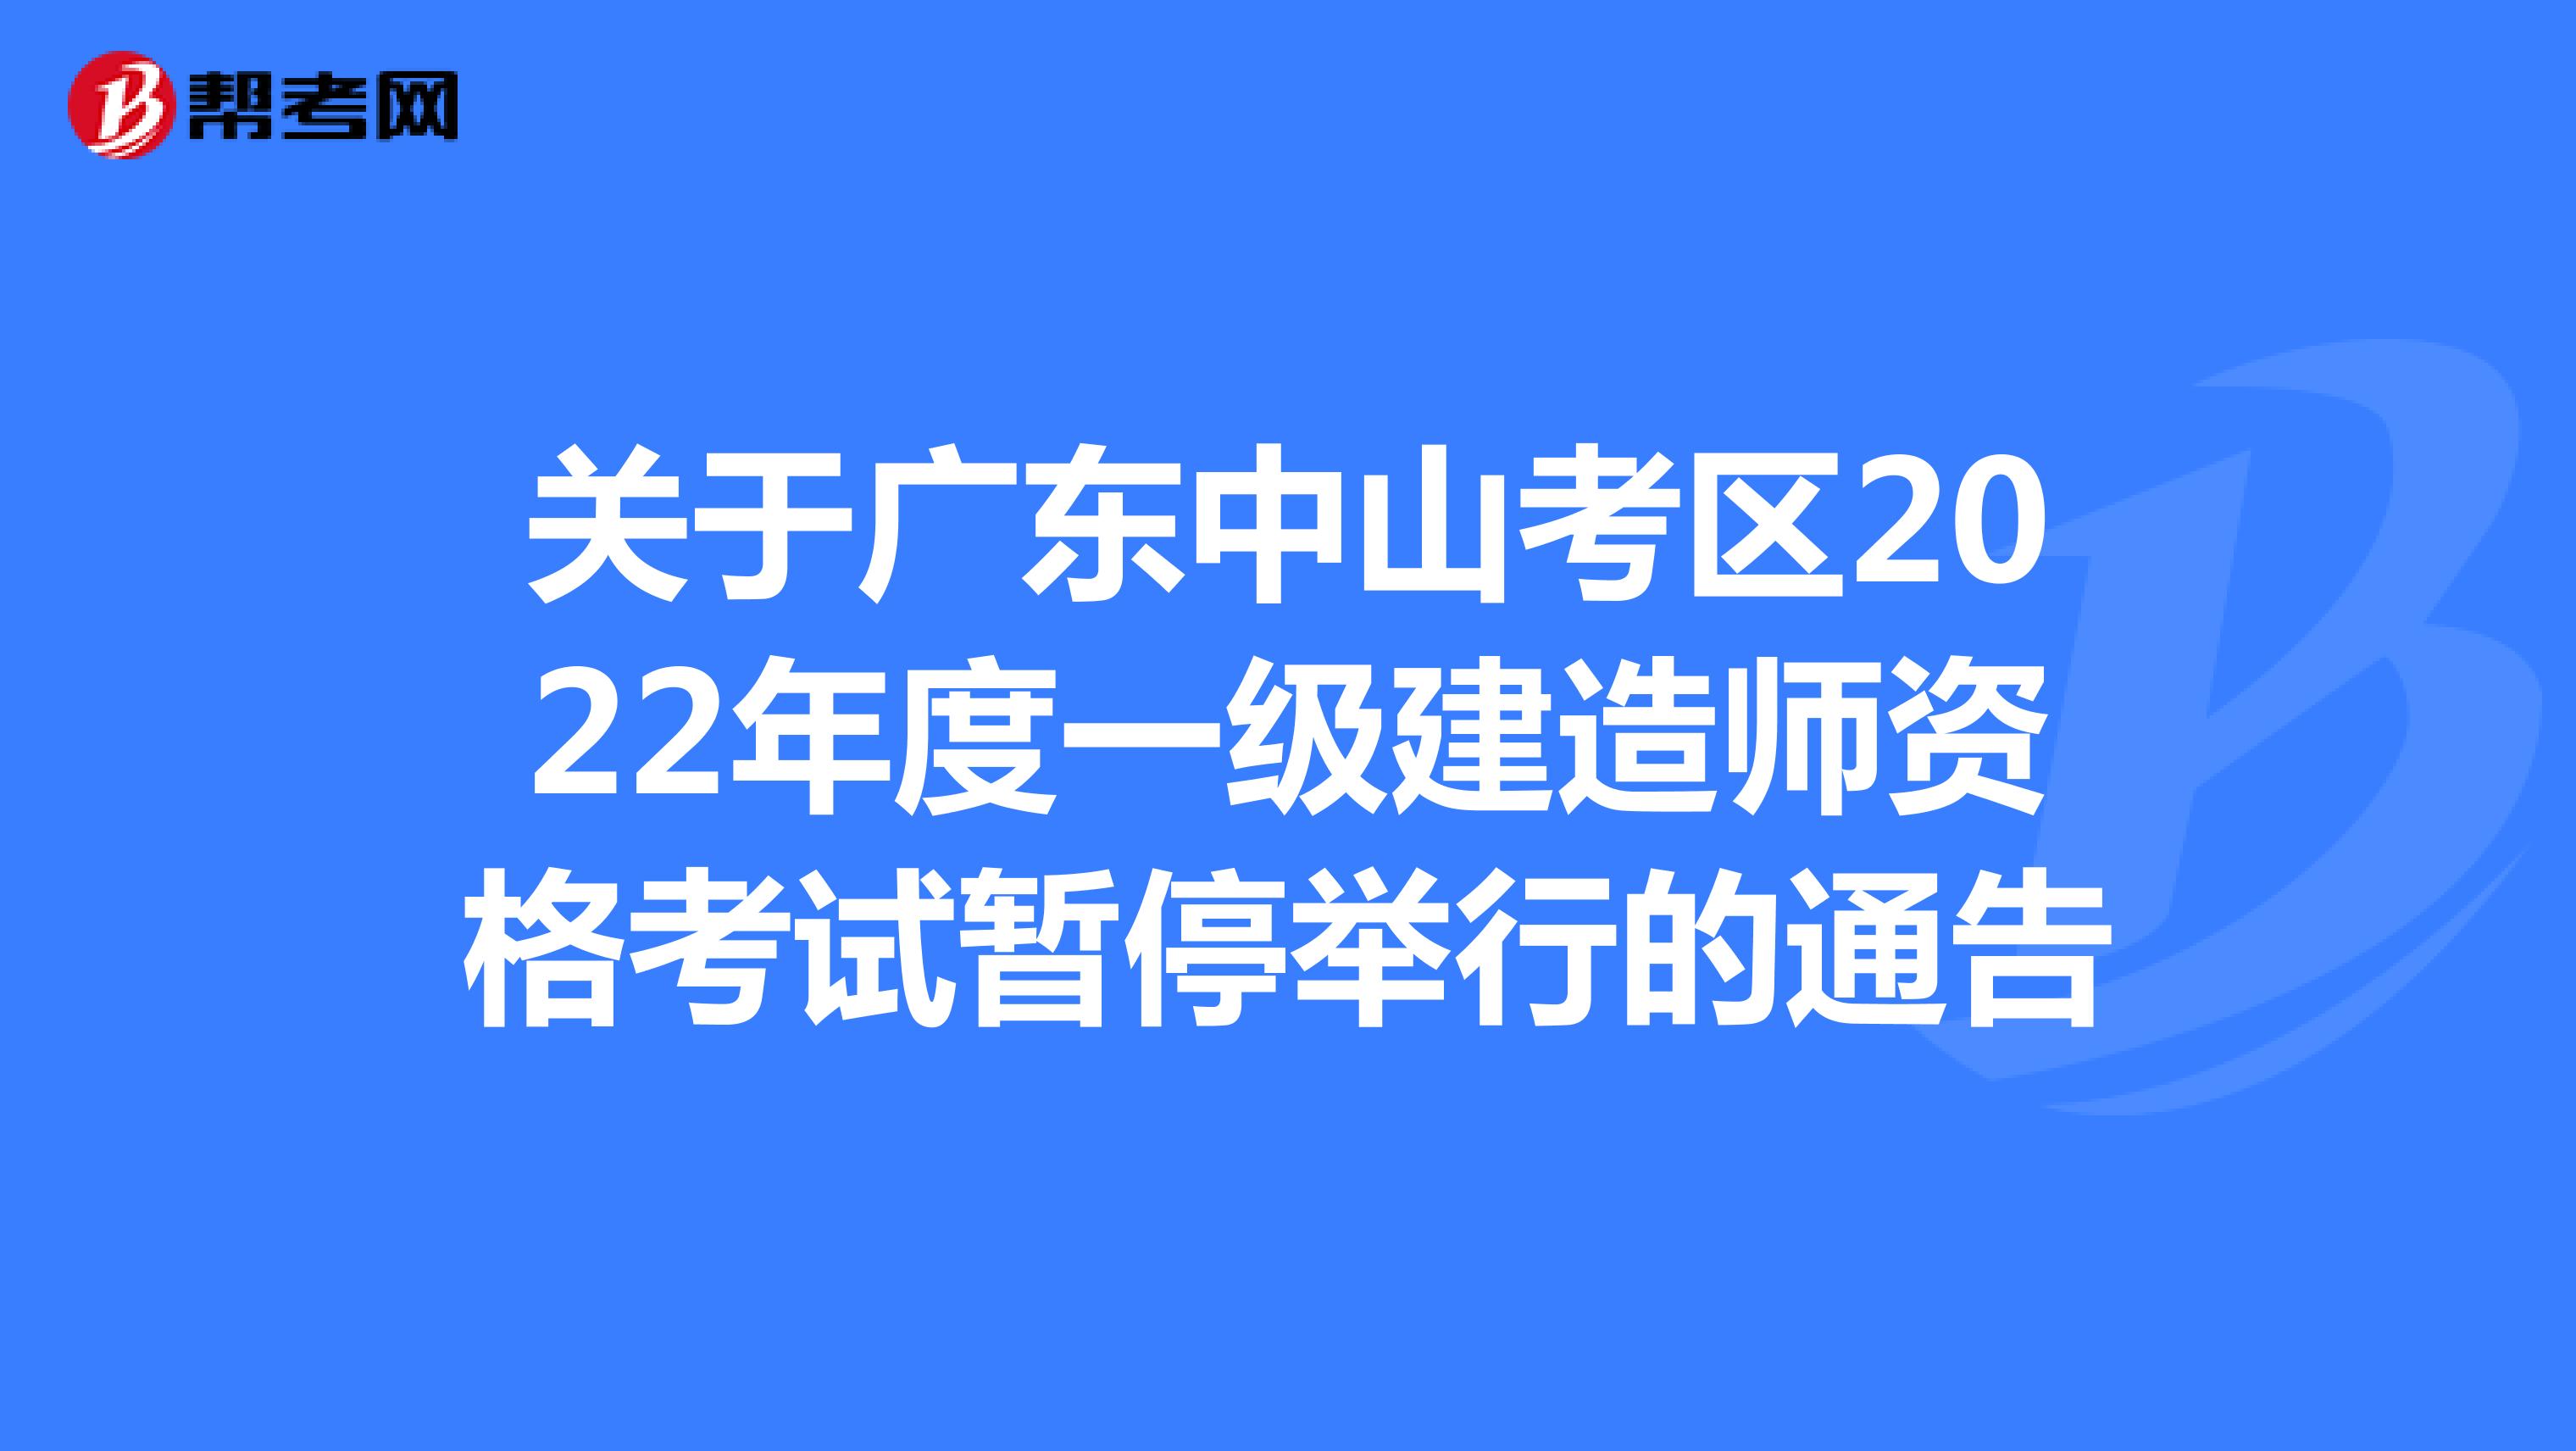 关于广东中山考区2022年度一级建造师资格考试暂停举行的通告